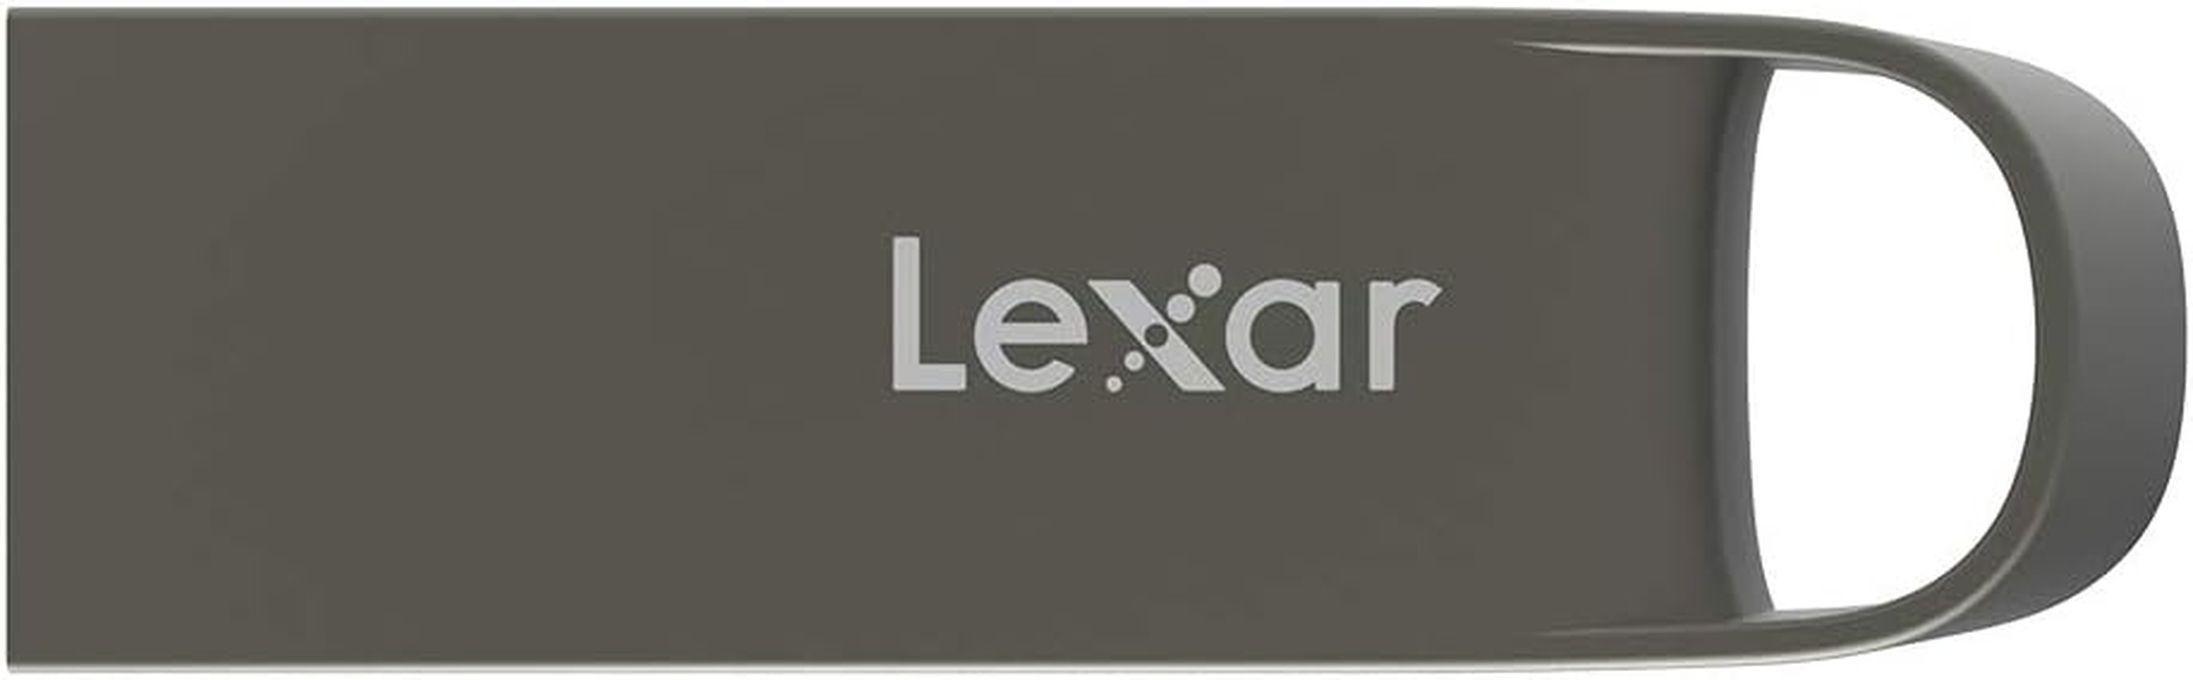 Lexar محرك أقراص فلاش ليكسر 64 جيجابايت USB 2.0، عصا USB صغيرة،